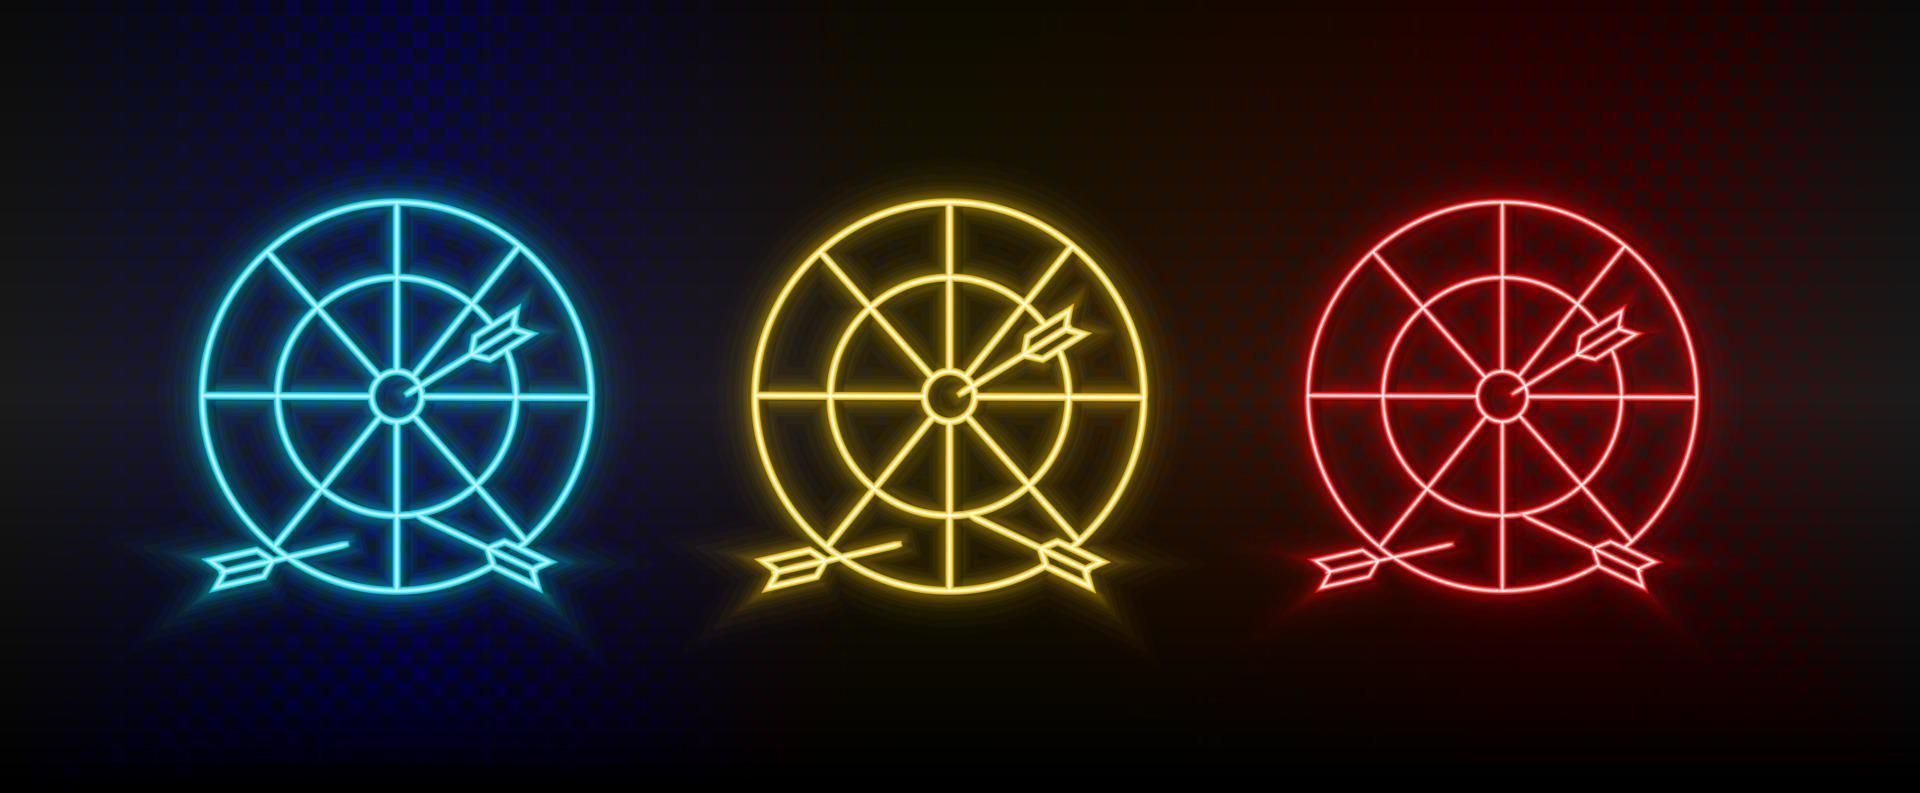 iconos de neón. círculo objetivo del tablero de dardos. conjunto de icono de vector de neón rojo, azul, amarillo sobre fondo oscuro